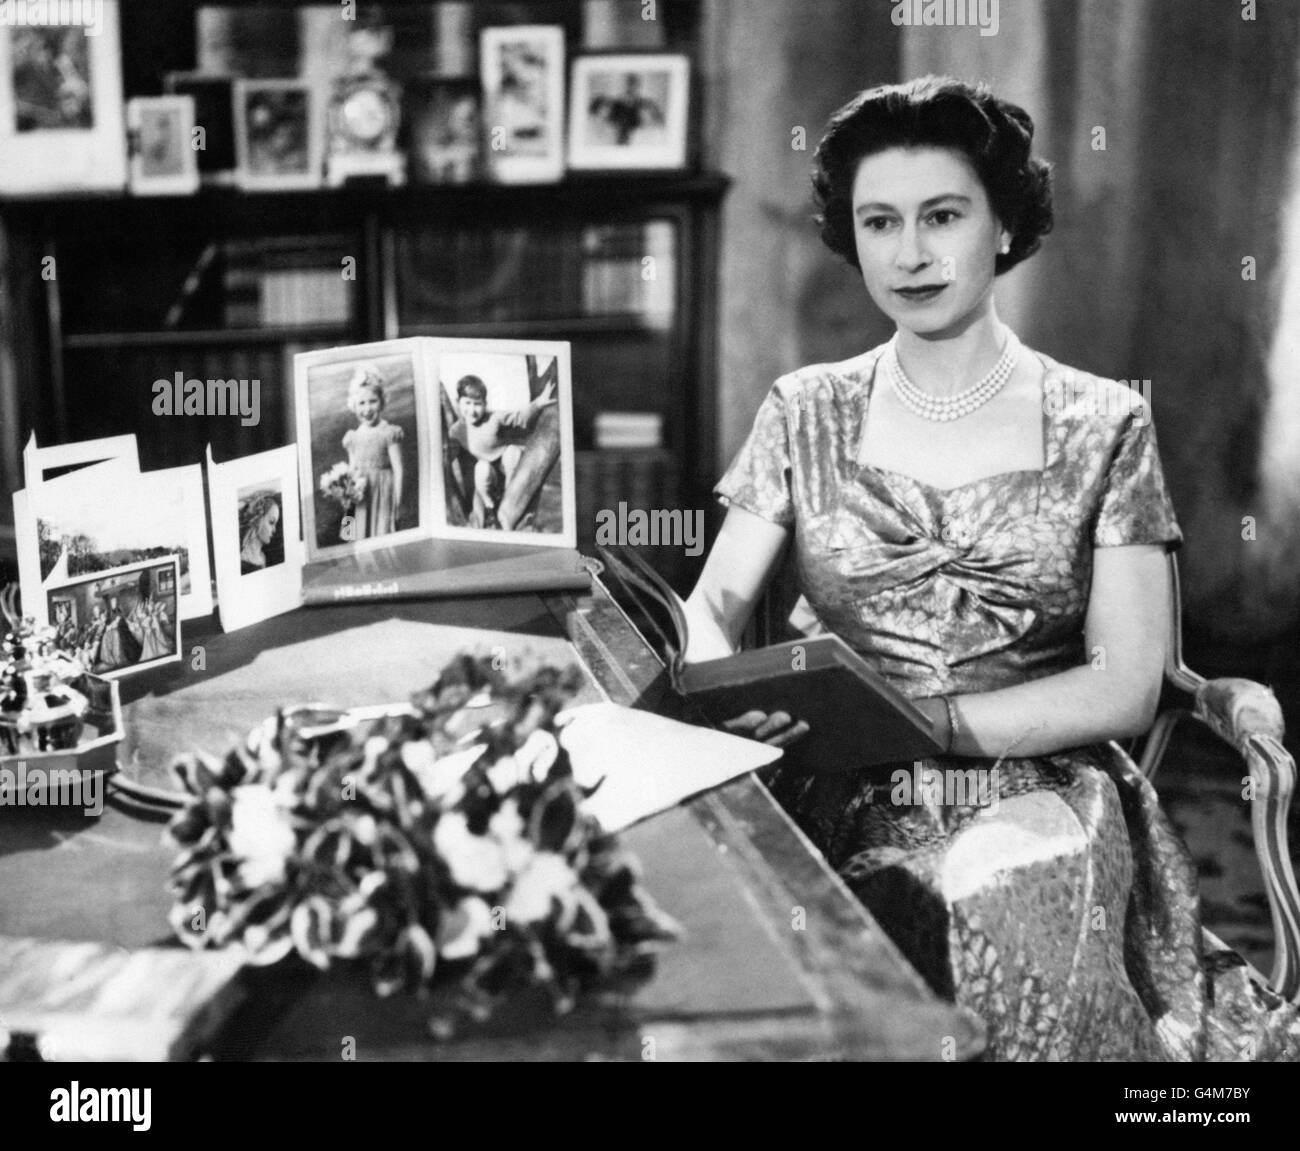 Die Königin, in einem Gold lahmen Kleid, wird in der Long Library in Sandringham kurz nach der Herstellung der traditionellen Weihnachtstag Sendung an die Nation gesehen. Auf dem Schreibtisch befinden sich Porträts von Prinz Charles und Prinzessin Anne. Die Königin hält die Kopie von "Pilgrim's Progress", aus der sie während ihrer Botschaft einige Zeilen las. Die Sendung wurde in diesem Jahr zum ersten Mal im Fernsehen übertragen und sowohl von der BBC als auch von ITV übertragen. Es war der 25. Jahrestag der ersten Radiobotschaft an den Commonwealth von ihrem Großvater, König George V. Stockfoto